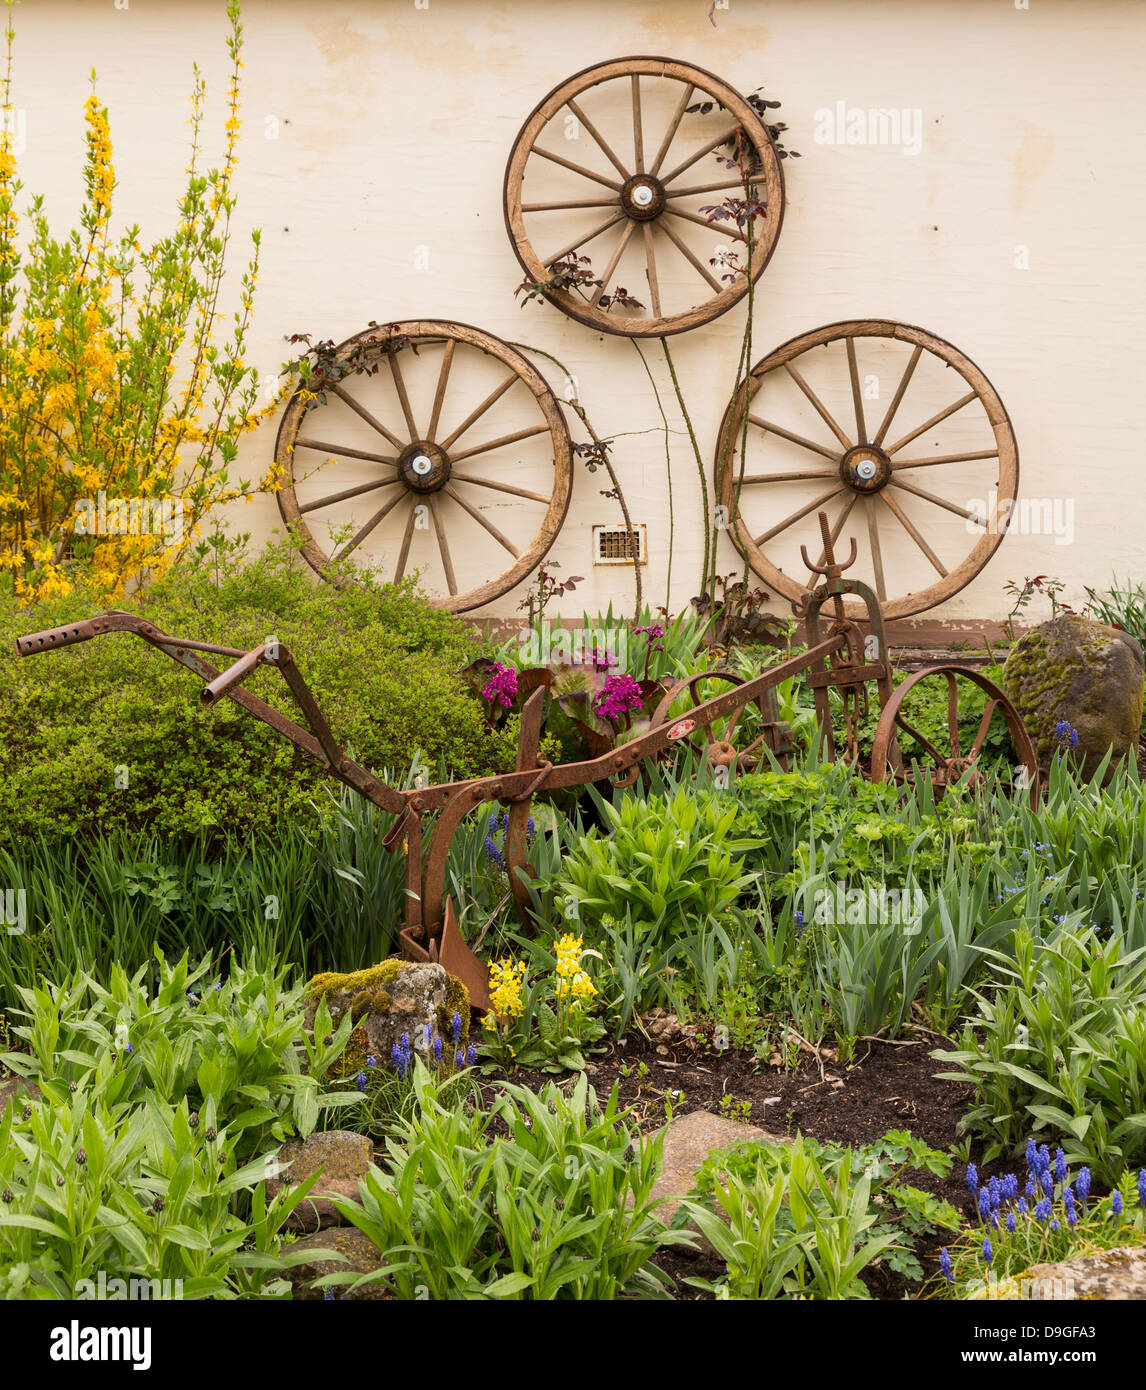 3 anciennes roues de chariot en bois fixé au mur en fer rouille rural jardin avec charrue charrue ou parmi les fleurs et plantes Banque D'Images